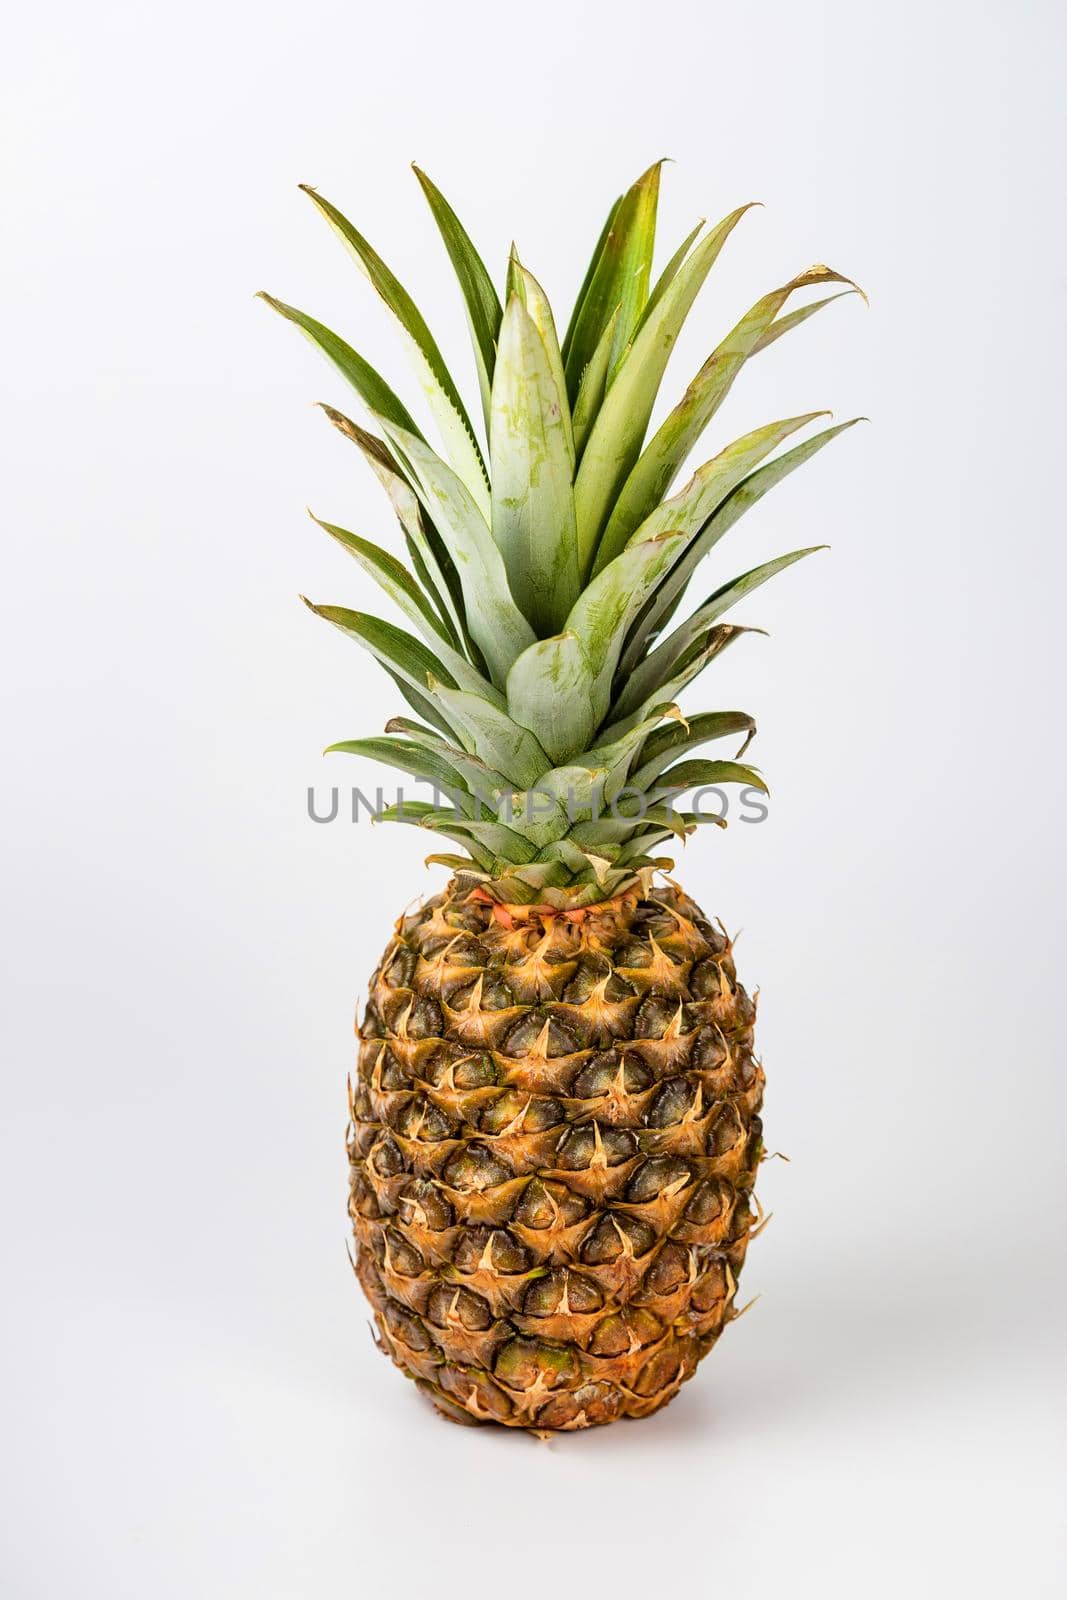 A Fresh pineapple fruit on white background by galinasharapova